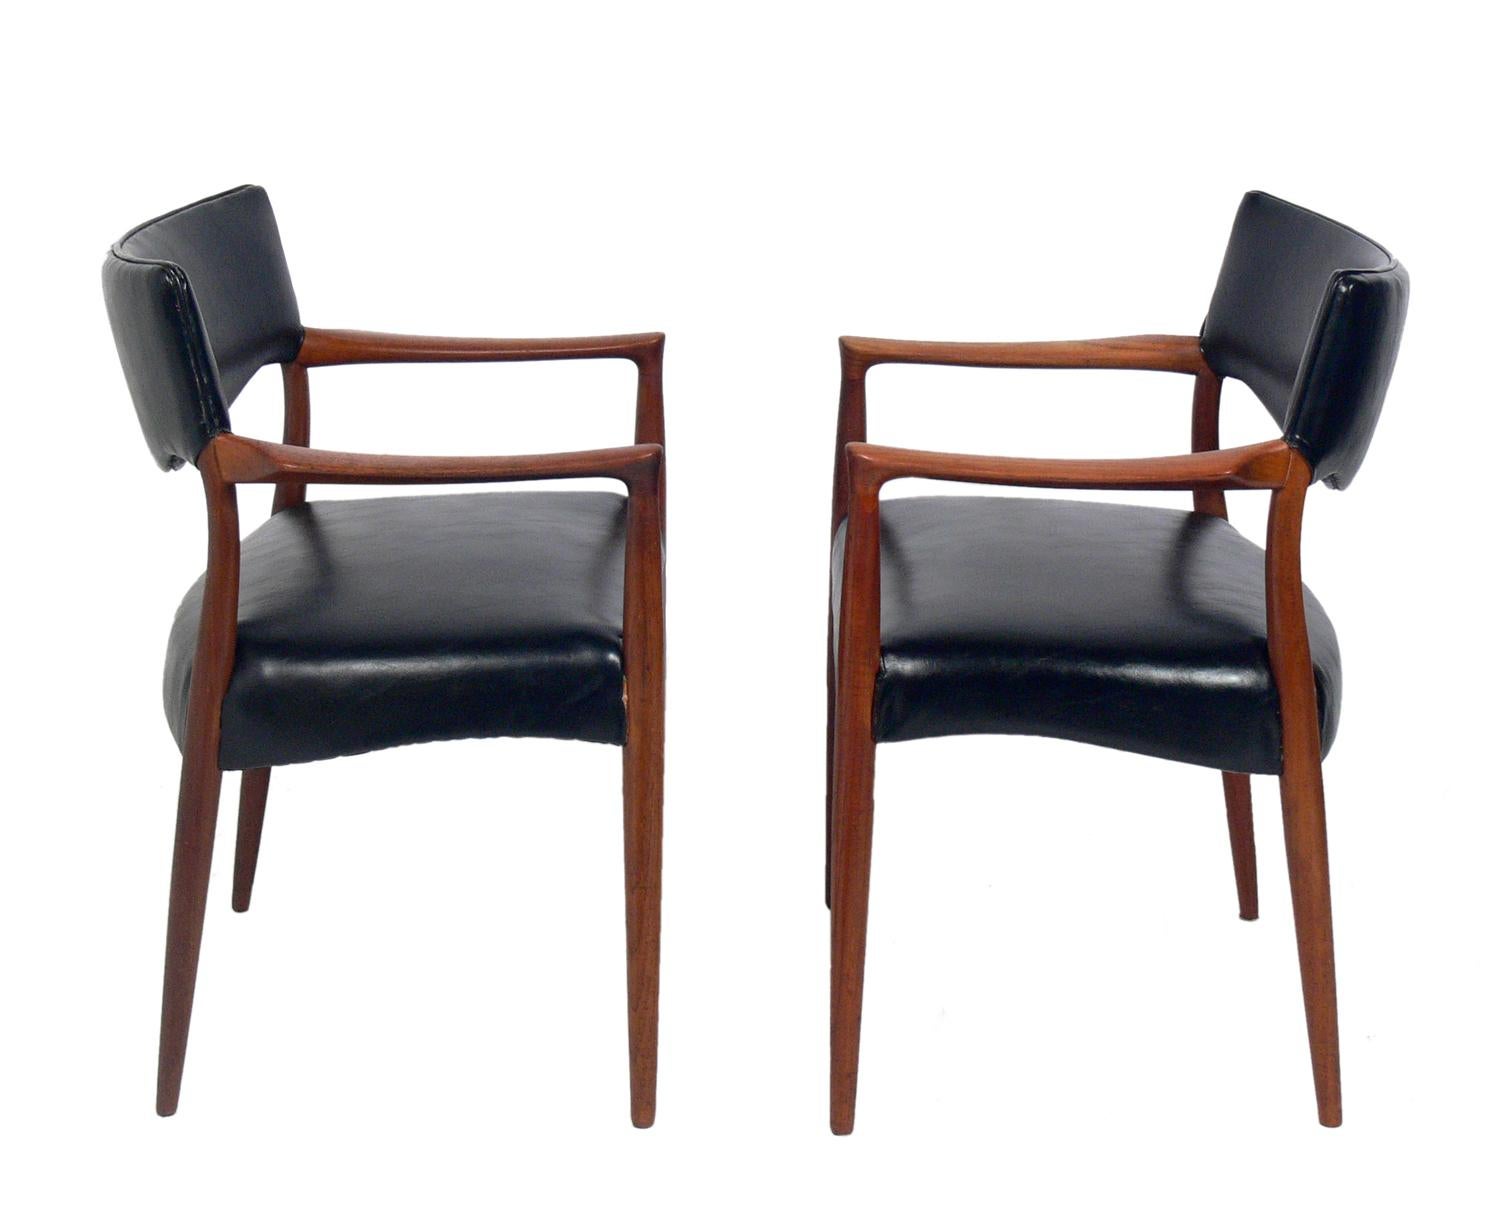 Zwei moderne dänische Stühle in der Art von Hans Wegner, Dänemark, ca. 1960er Jahre. Sie haben ihre schwarze Vinylpolsterung behalten und wurden gereinigt und geölt.